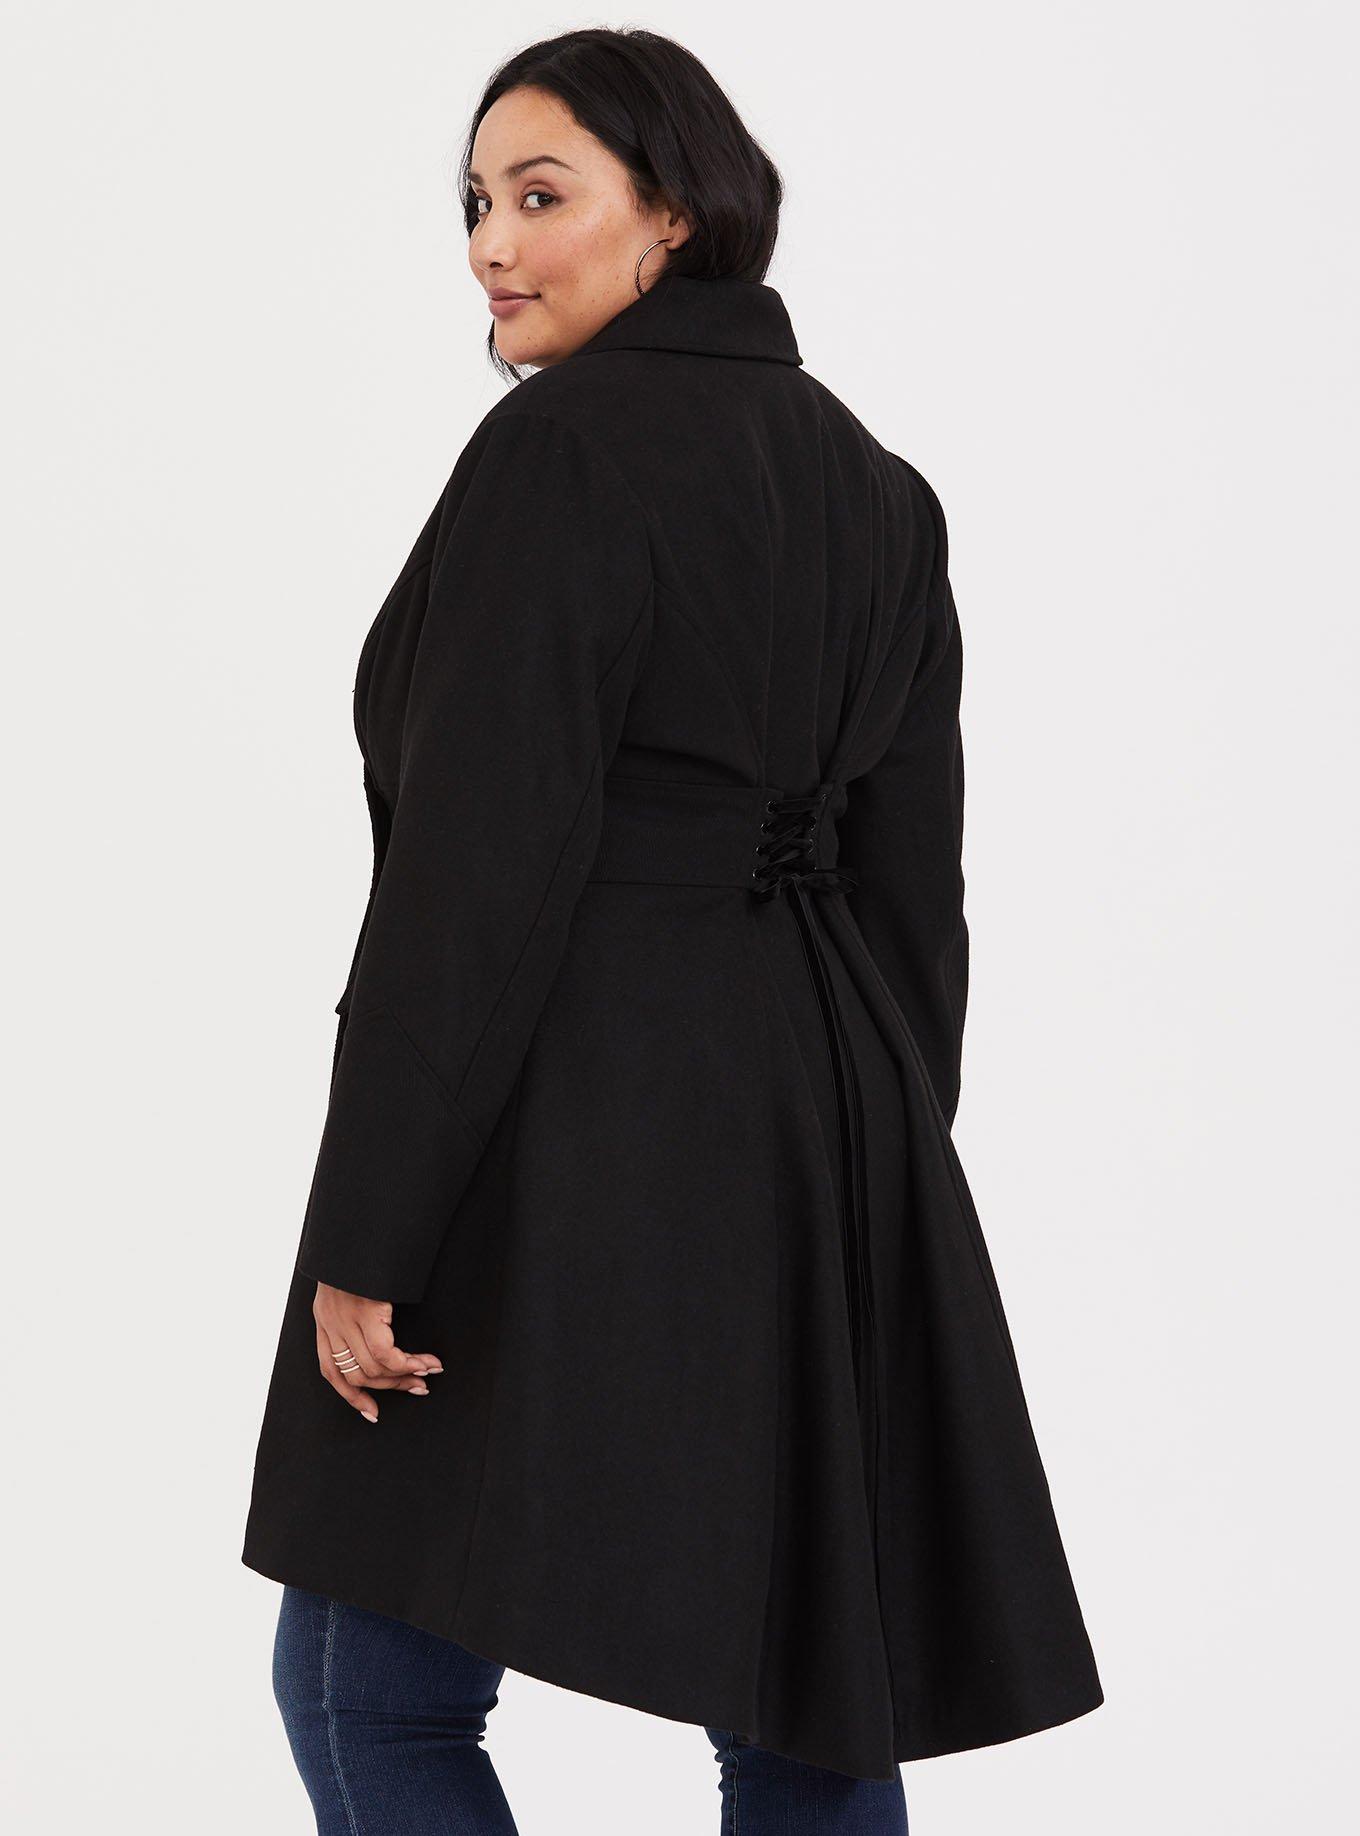 Plus Size - Harry Potter Bellatrix Black Lace-Up Coat - Torrid